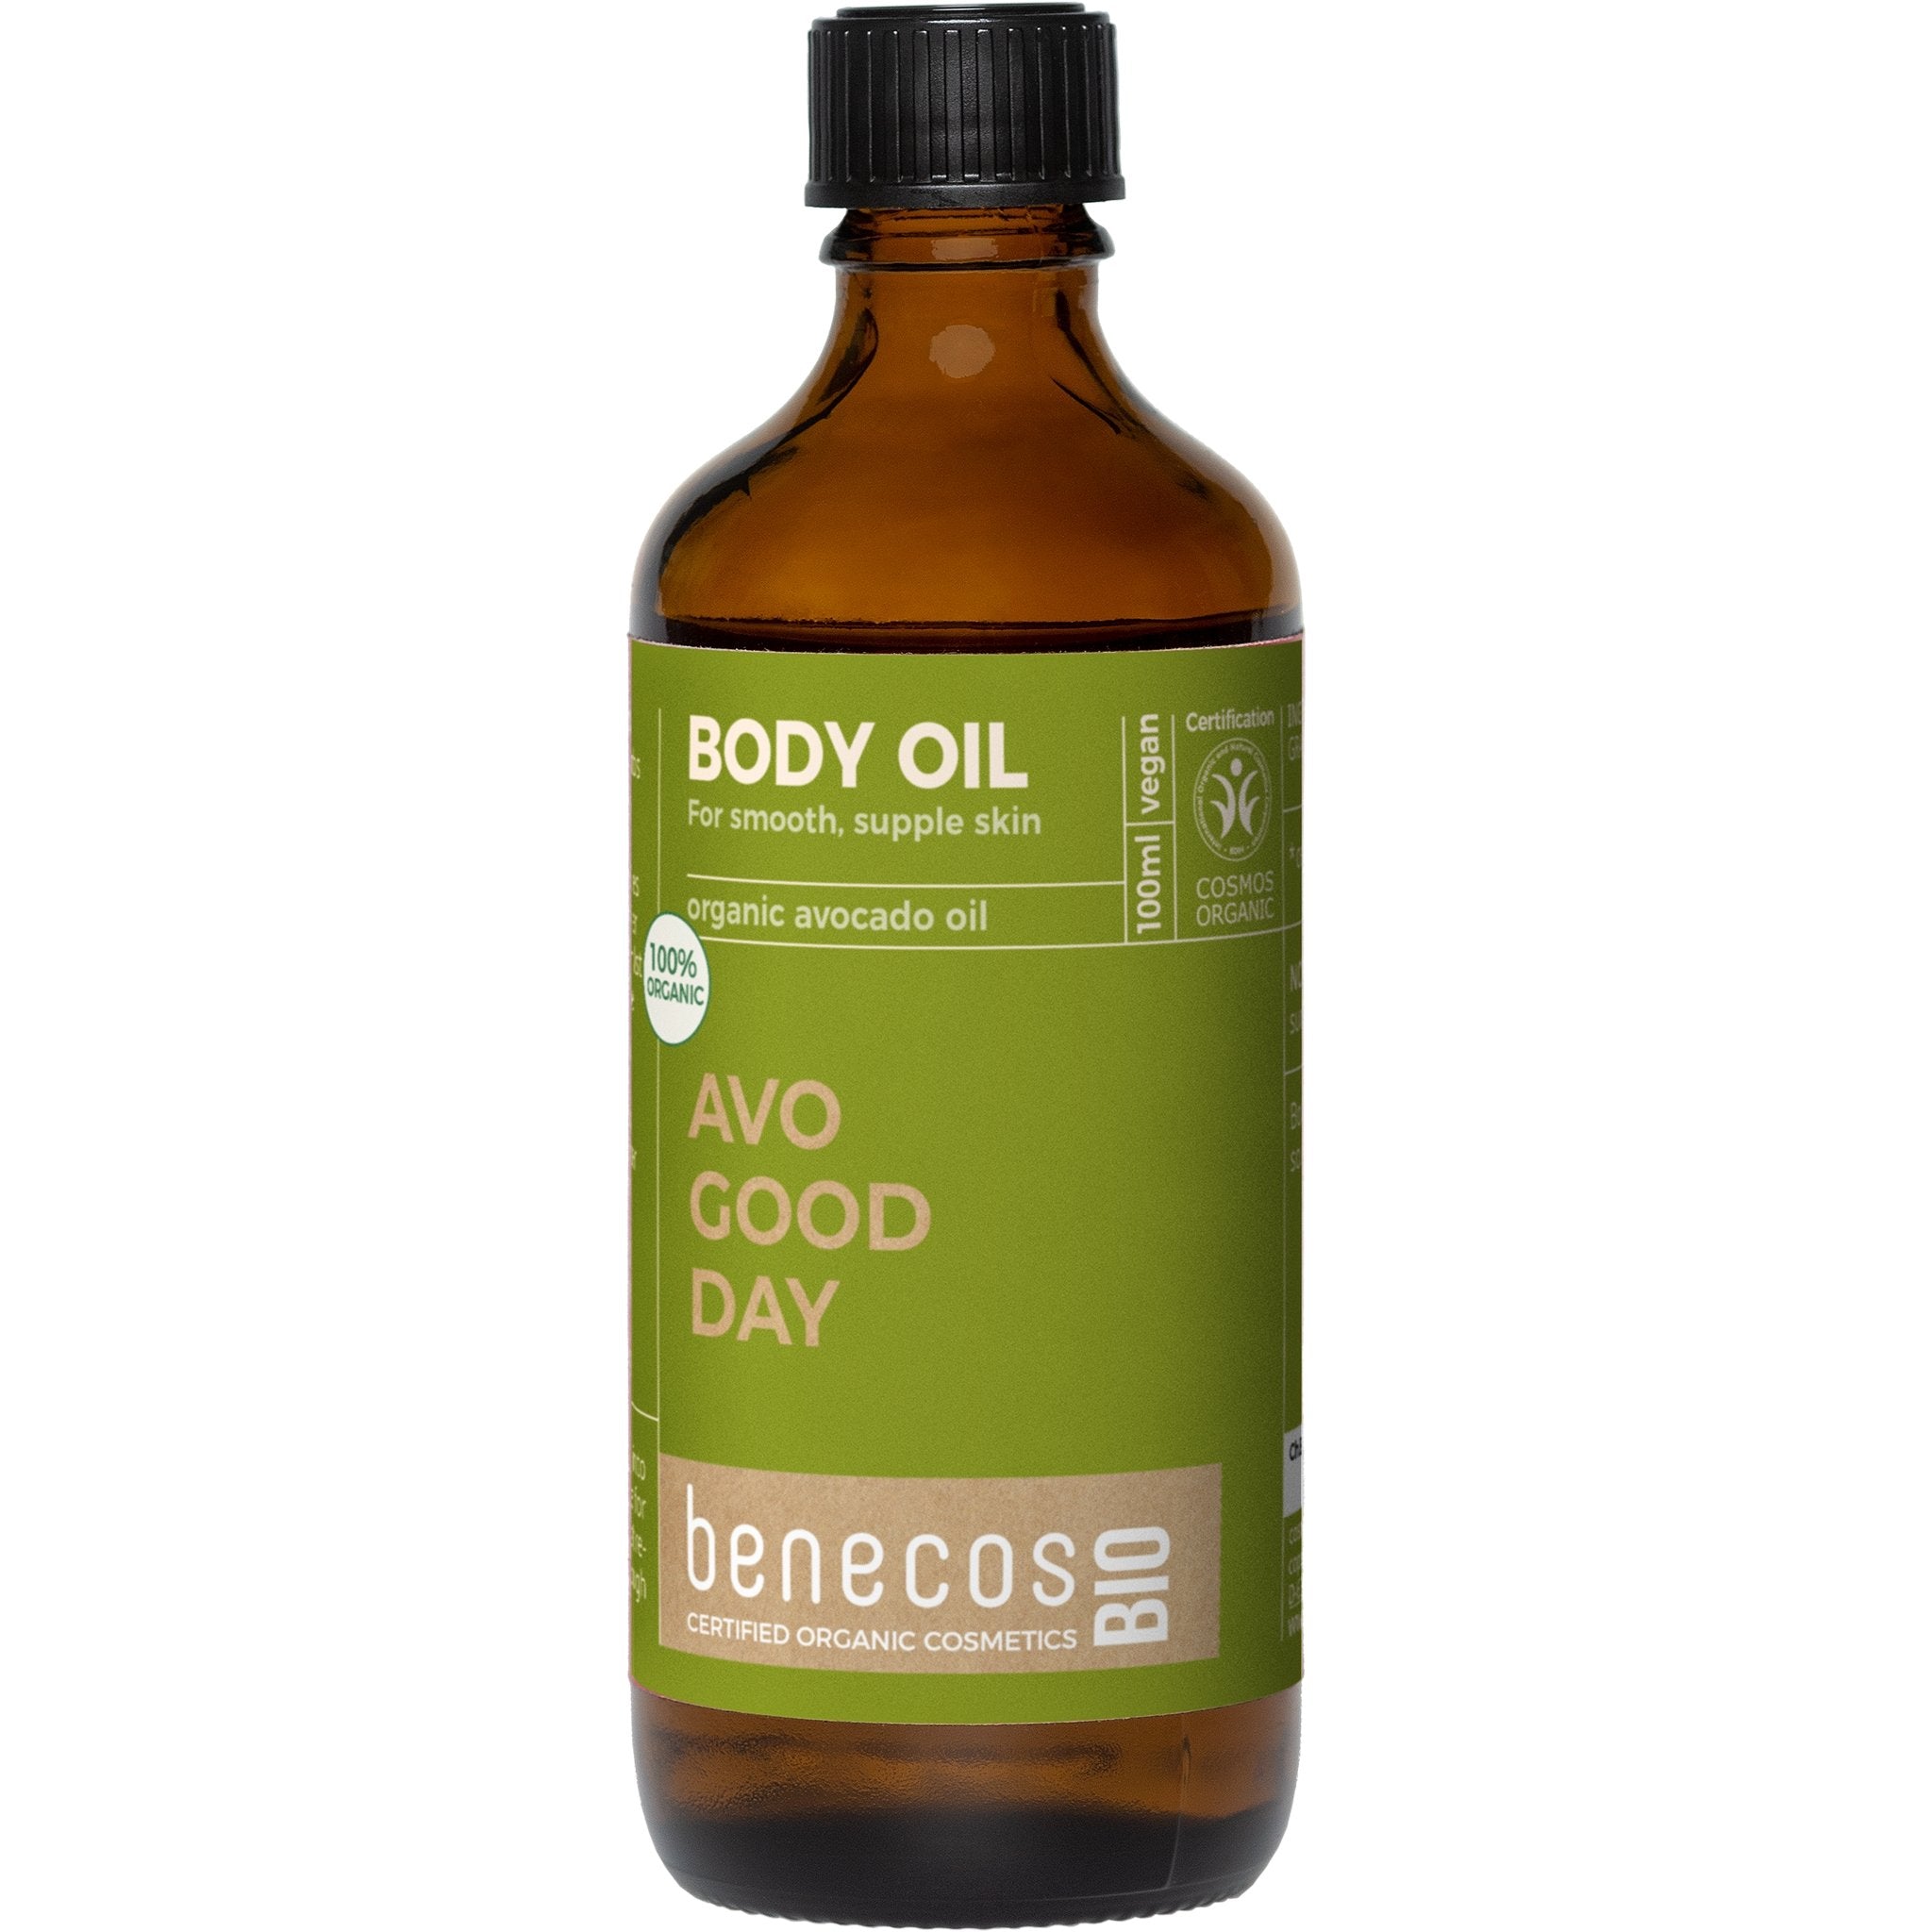 Avo Good Day - Avocado Body Oil - mypure.co.uk